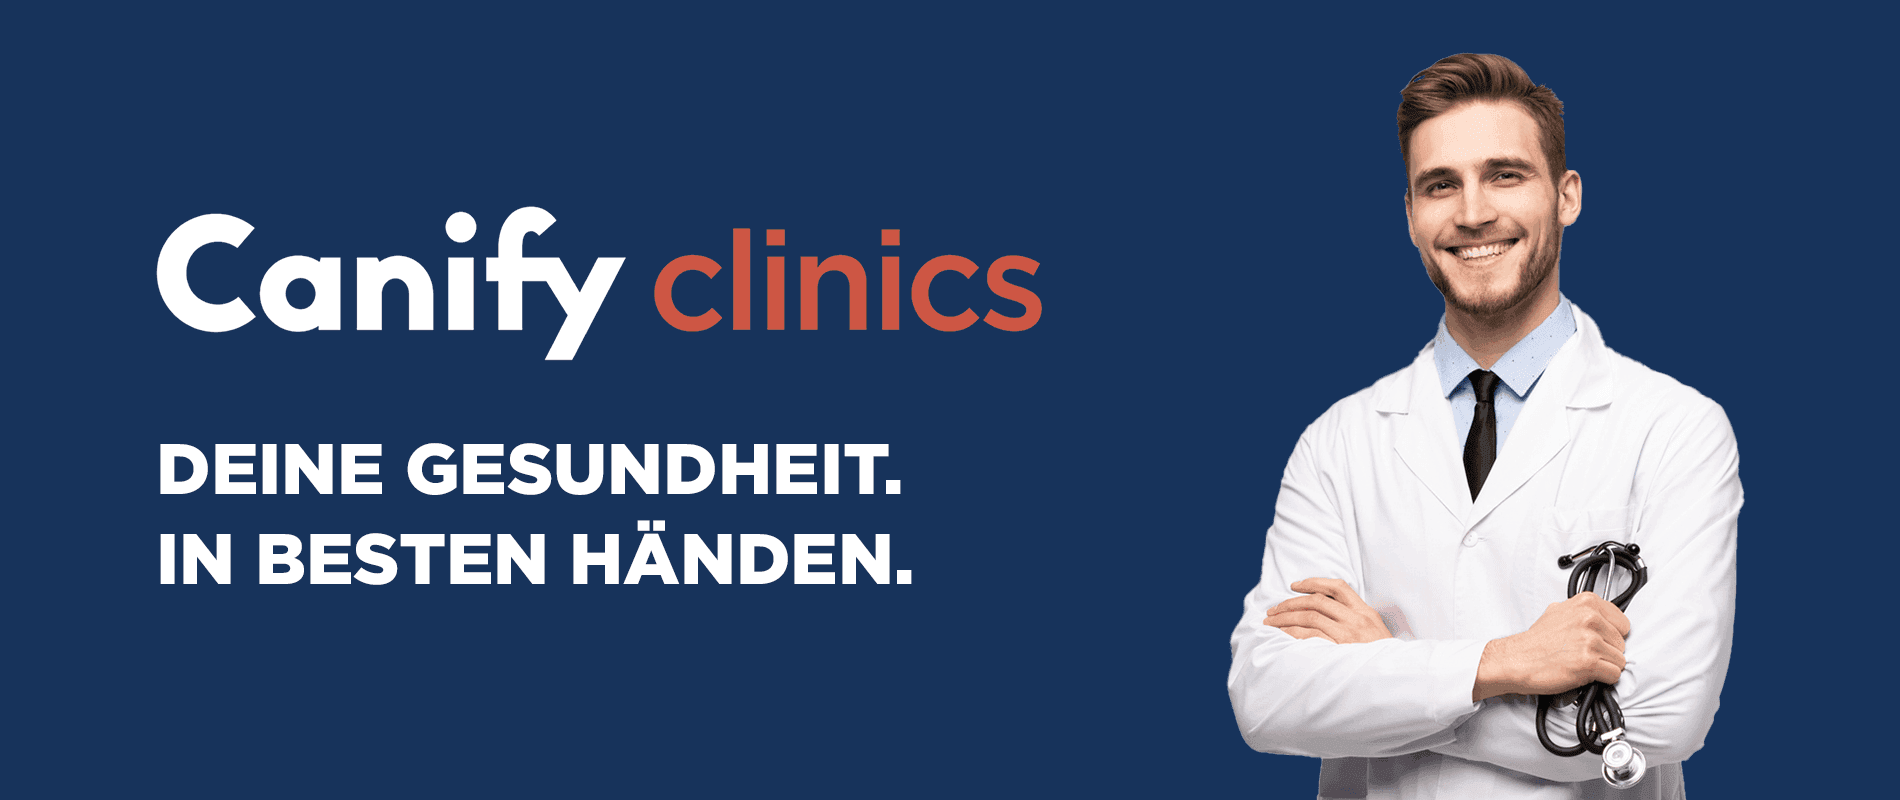 canify-clinics-hero-image